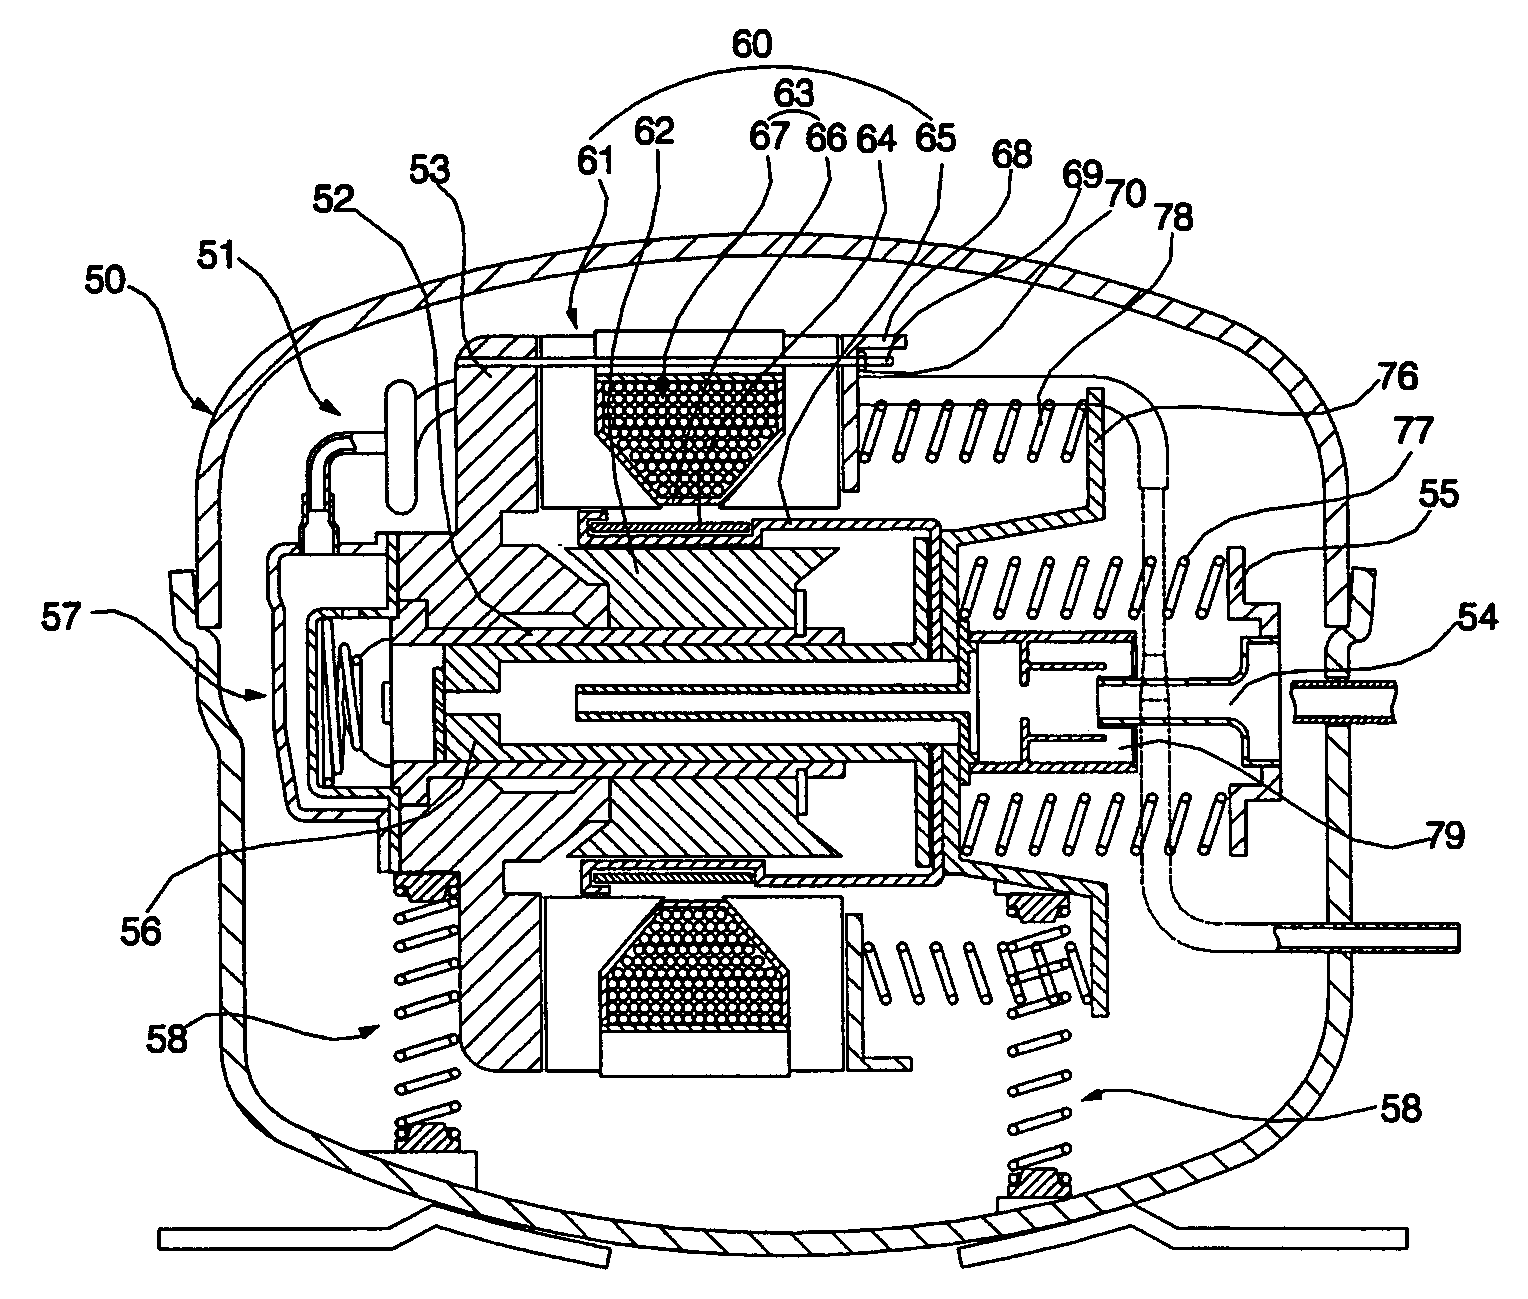 Stator of linear motor